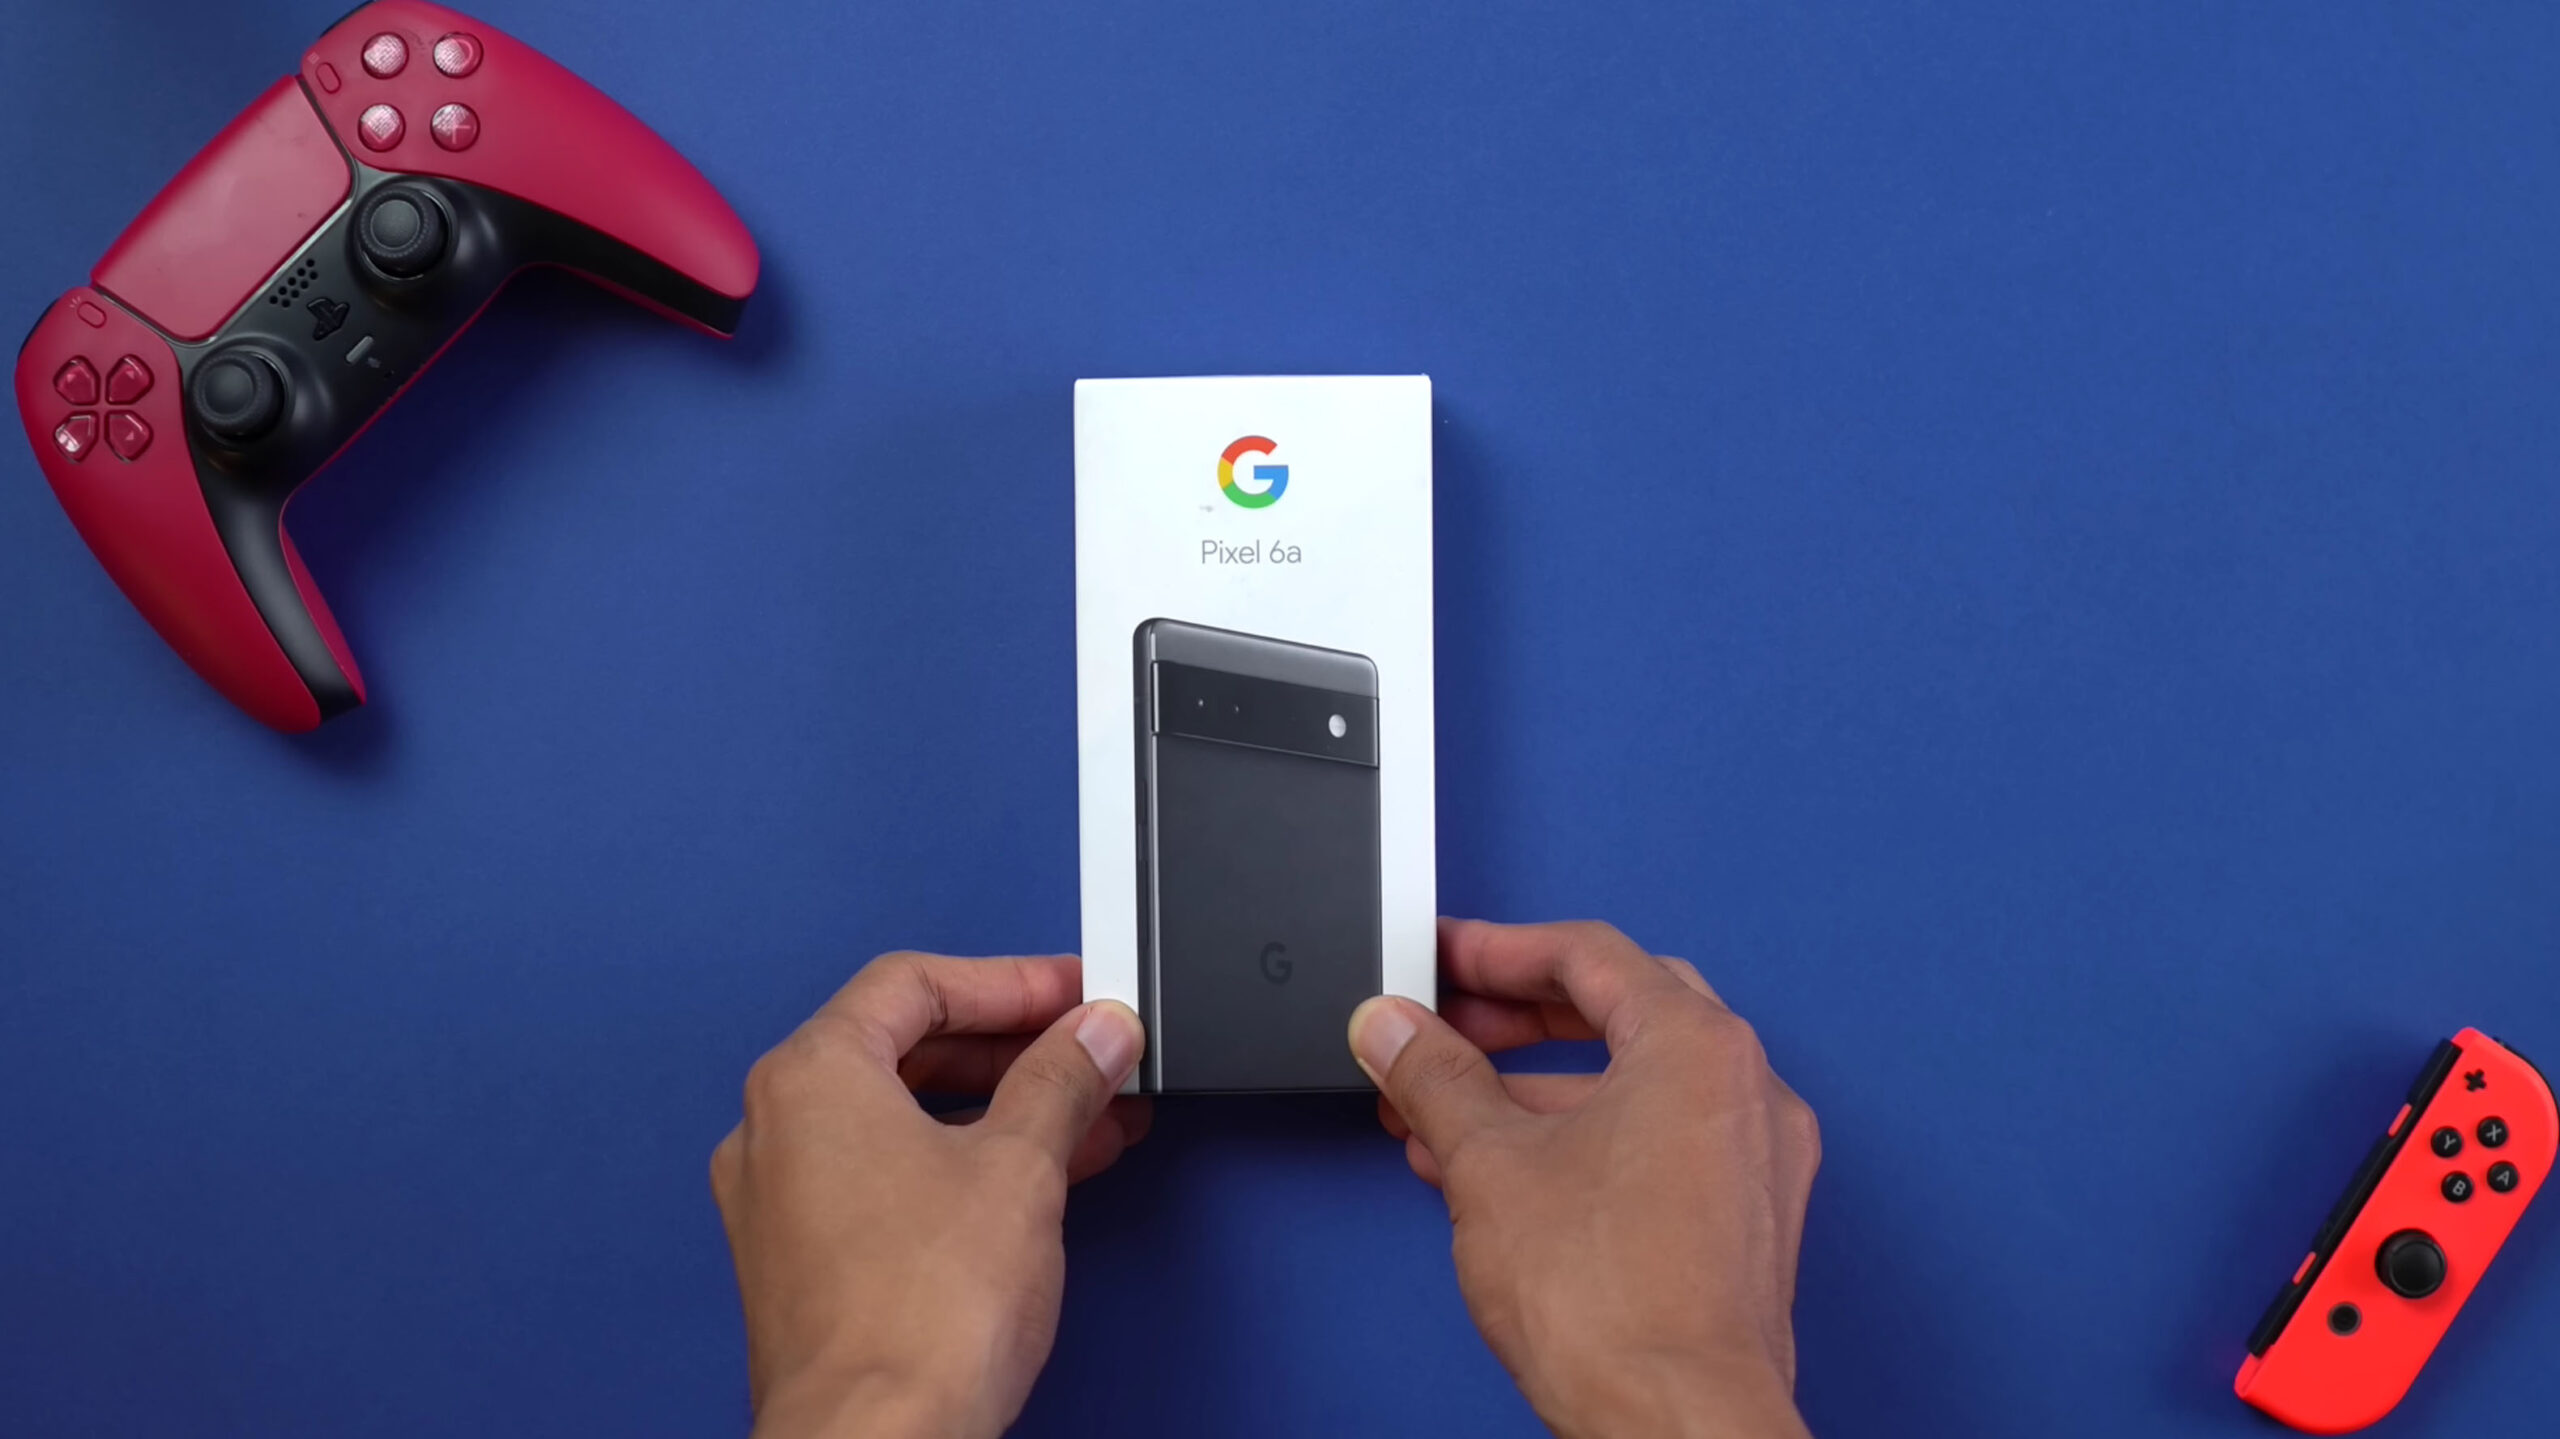 Google Pixel 6a box